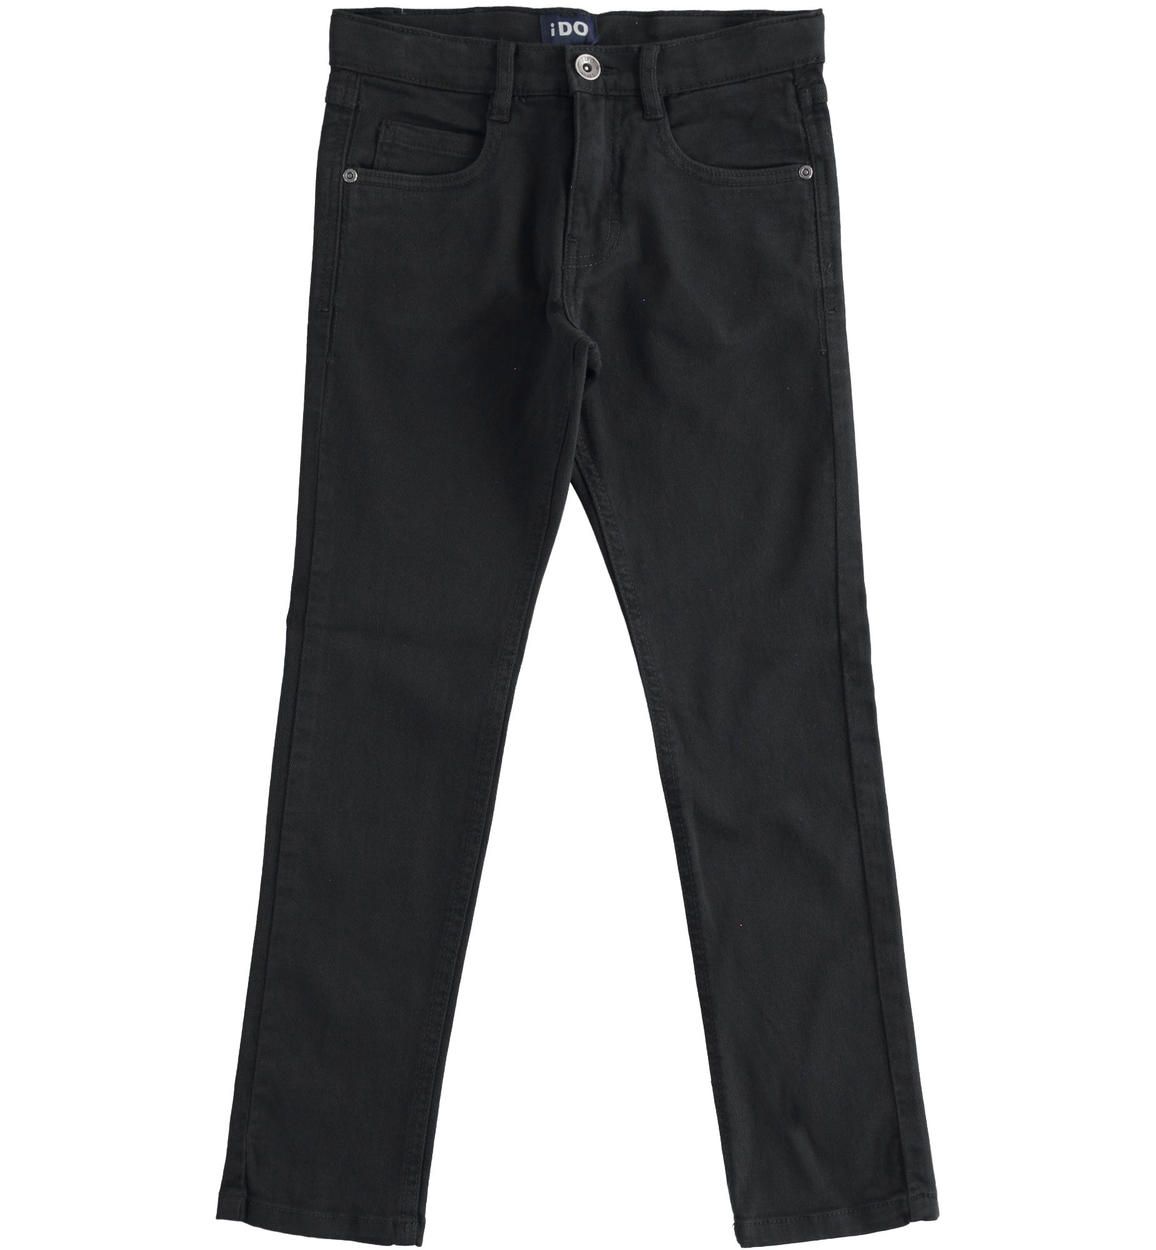 Pantalone modello cinque tasche in twill NERO iDO